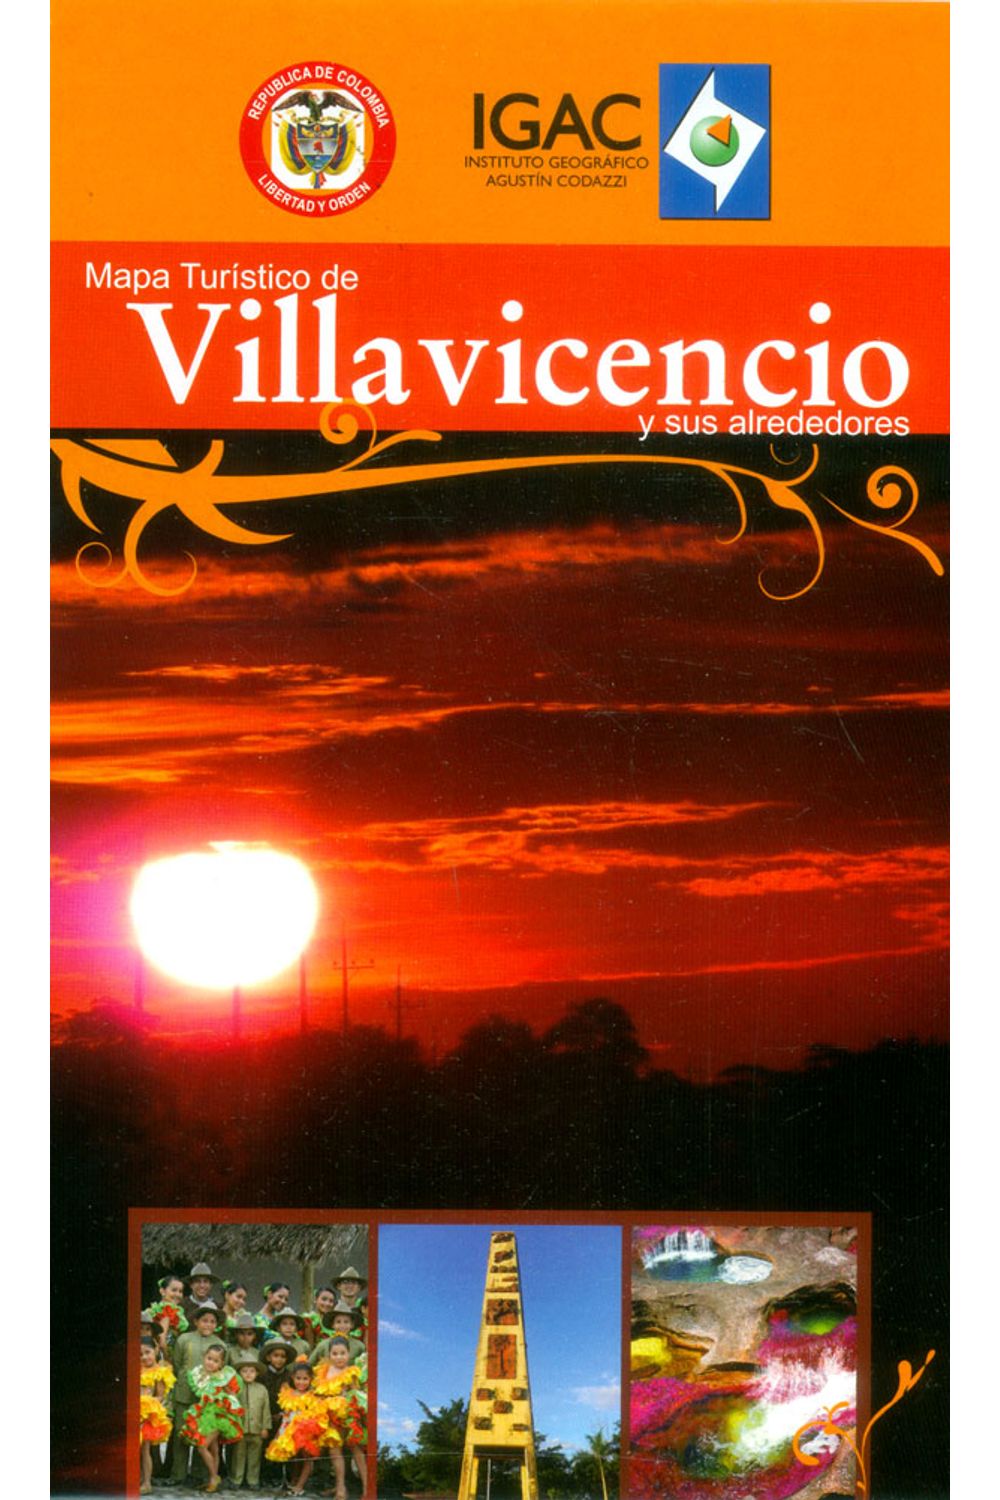 mapa-turistico-de-villavicencio-y-sus-alrededores-7703476001702-igac